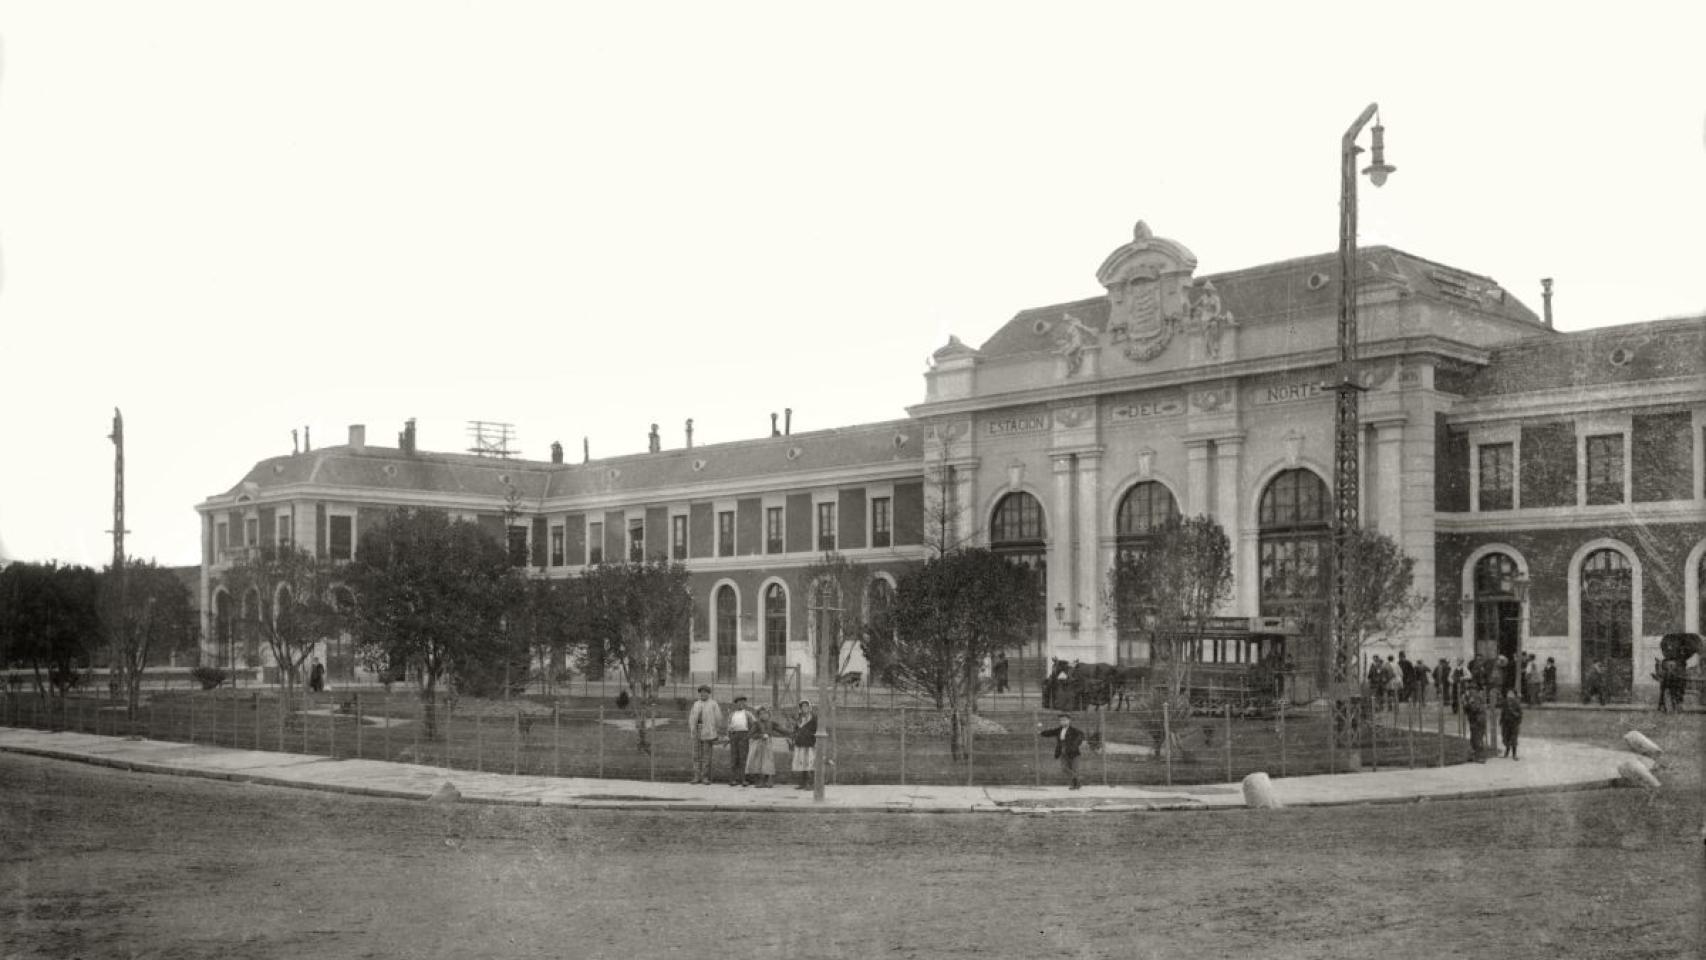 Imagen de la estación del Norte de Valladolid en 1910